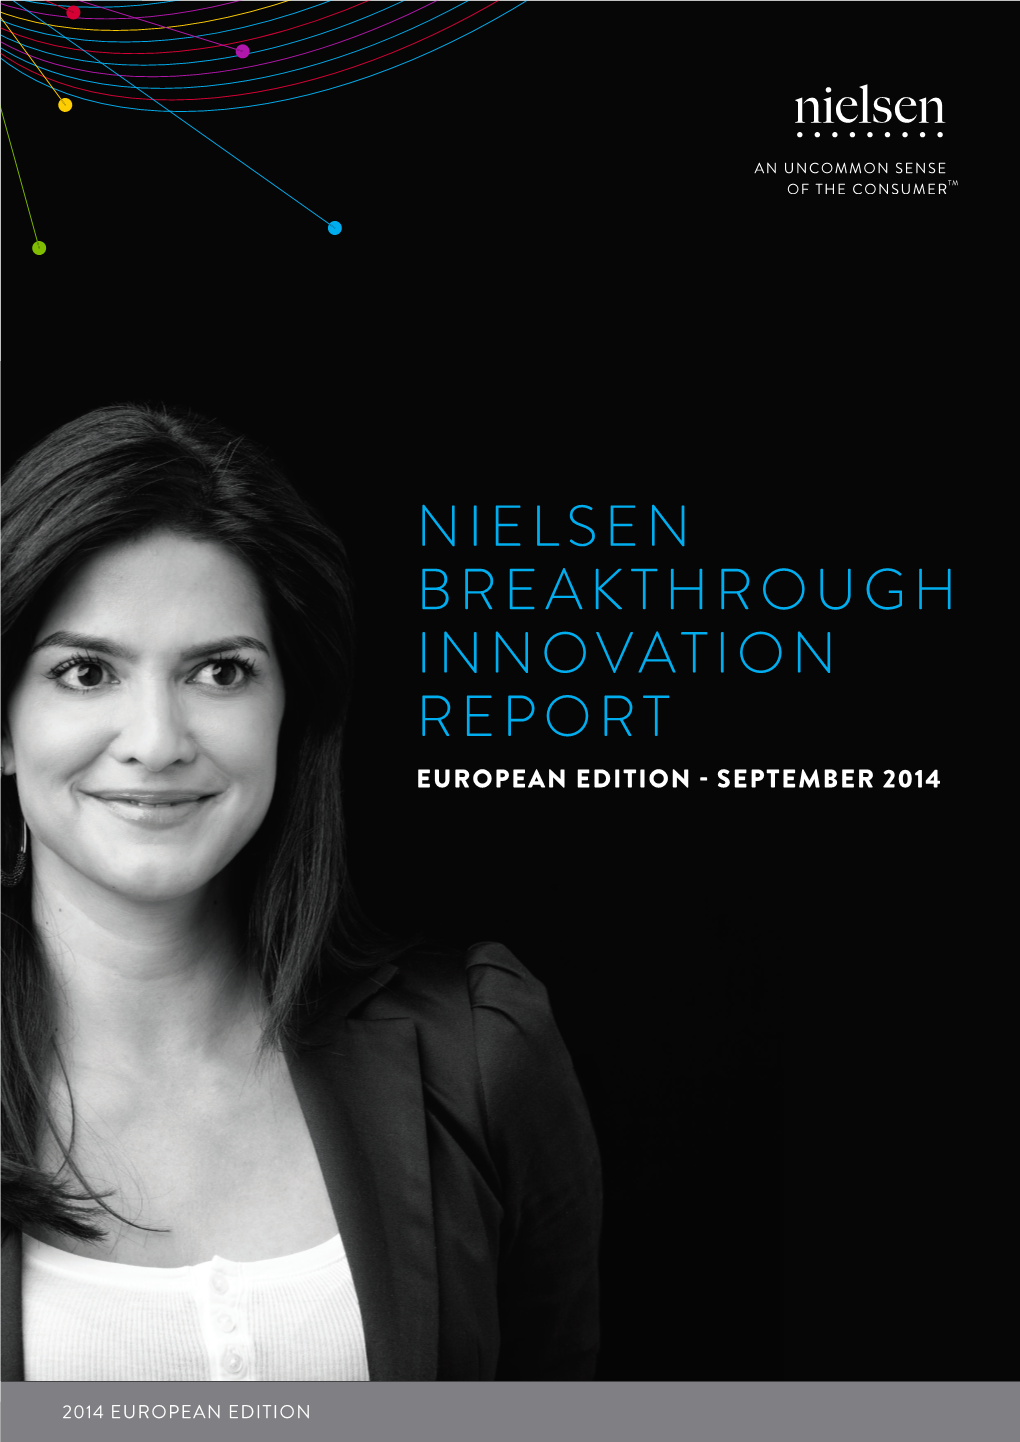 Nielsen Breakthrough Innovation Report European Edition - September 2014